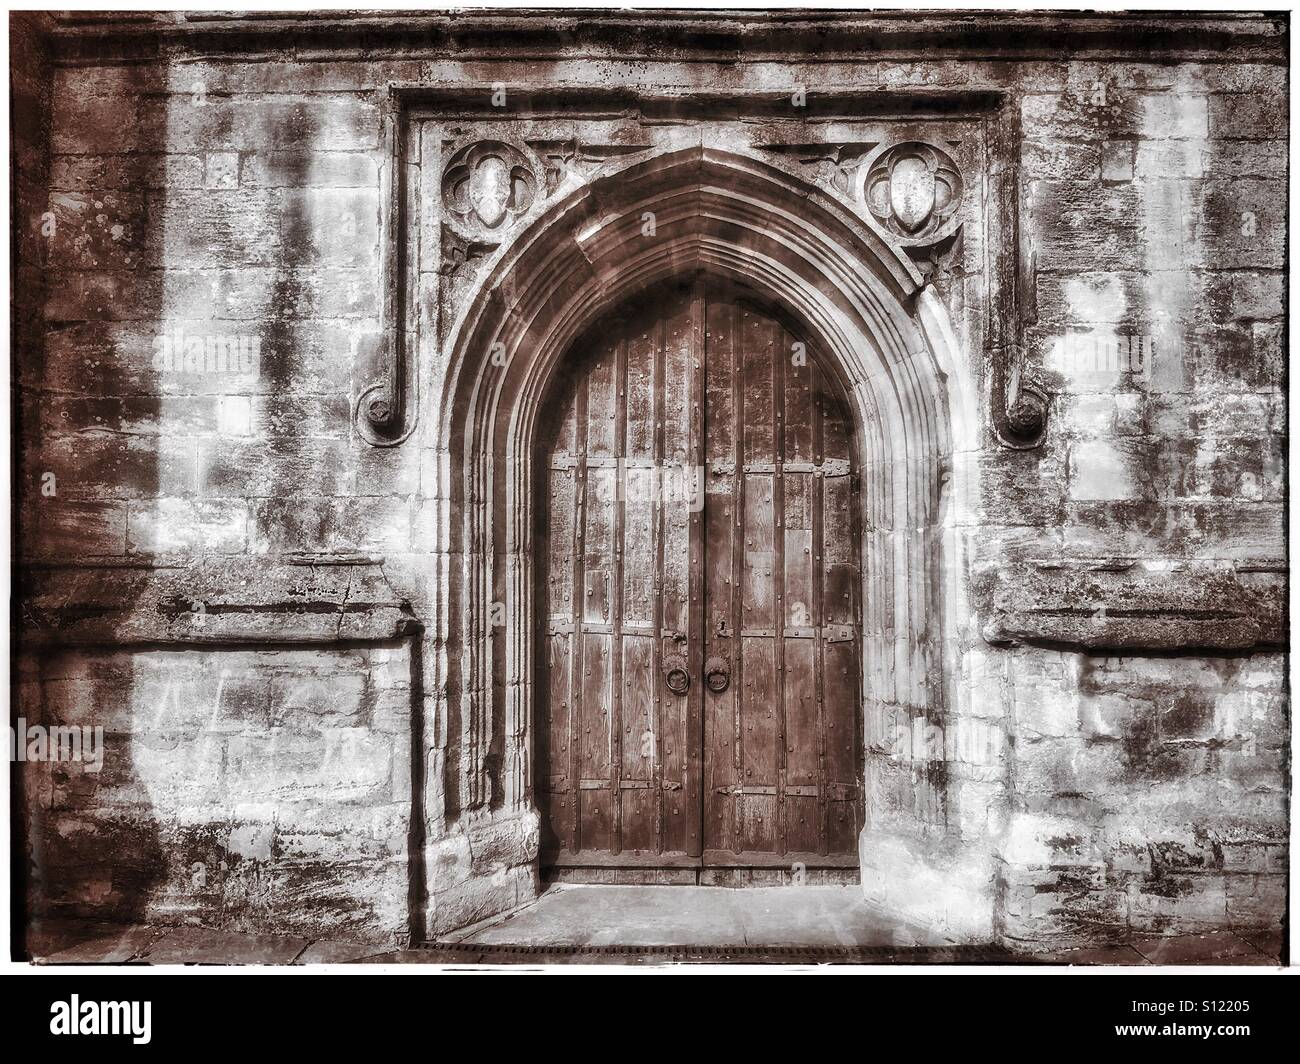 La porte de l'ouest de l'église paroissiale Saint Jean Baptiste de Cirencester, Gloucestershire, Angleterre. Cirencester est la porte d'entrée les dans le sud de l'Angleterre. Crédits photos - © COLIN HOSKINS. Banque D'Images